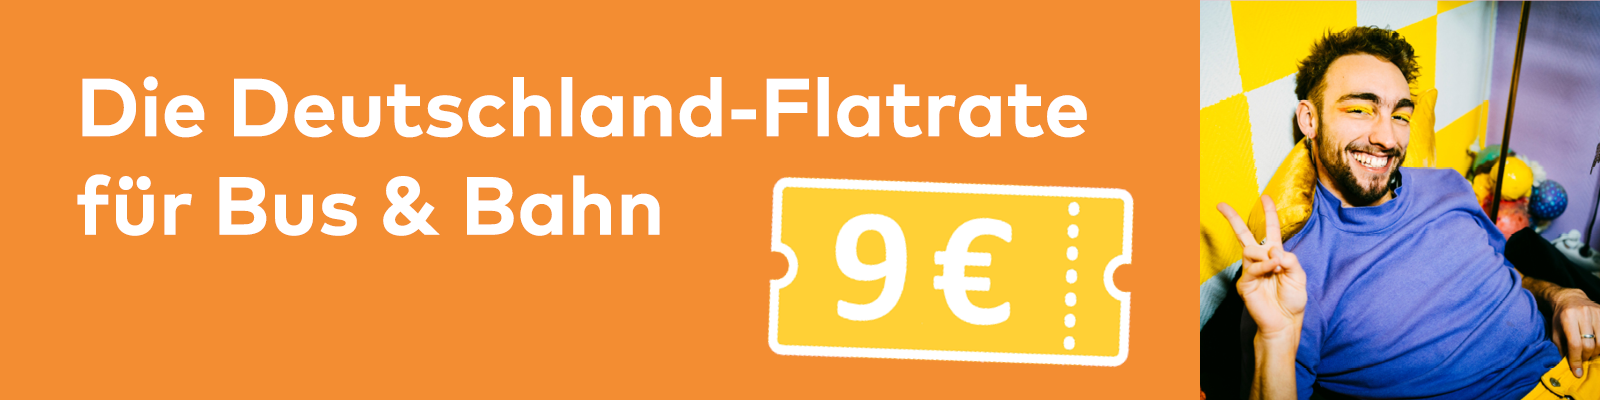 9 Euro Banner: Die Deutschland-Flatrate für Bus und Bahn